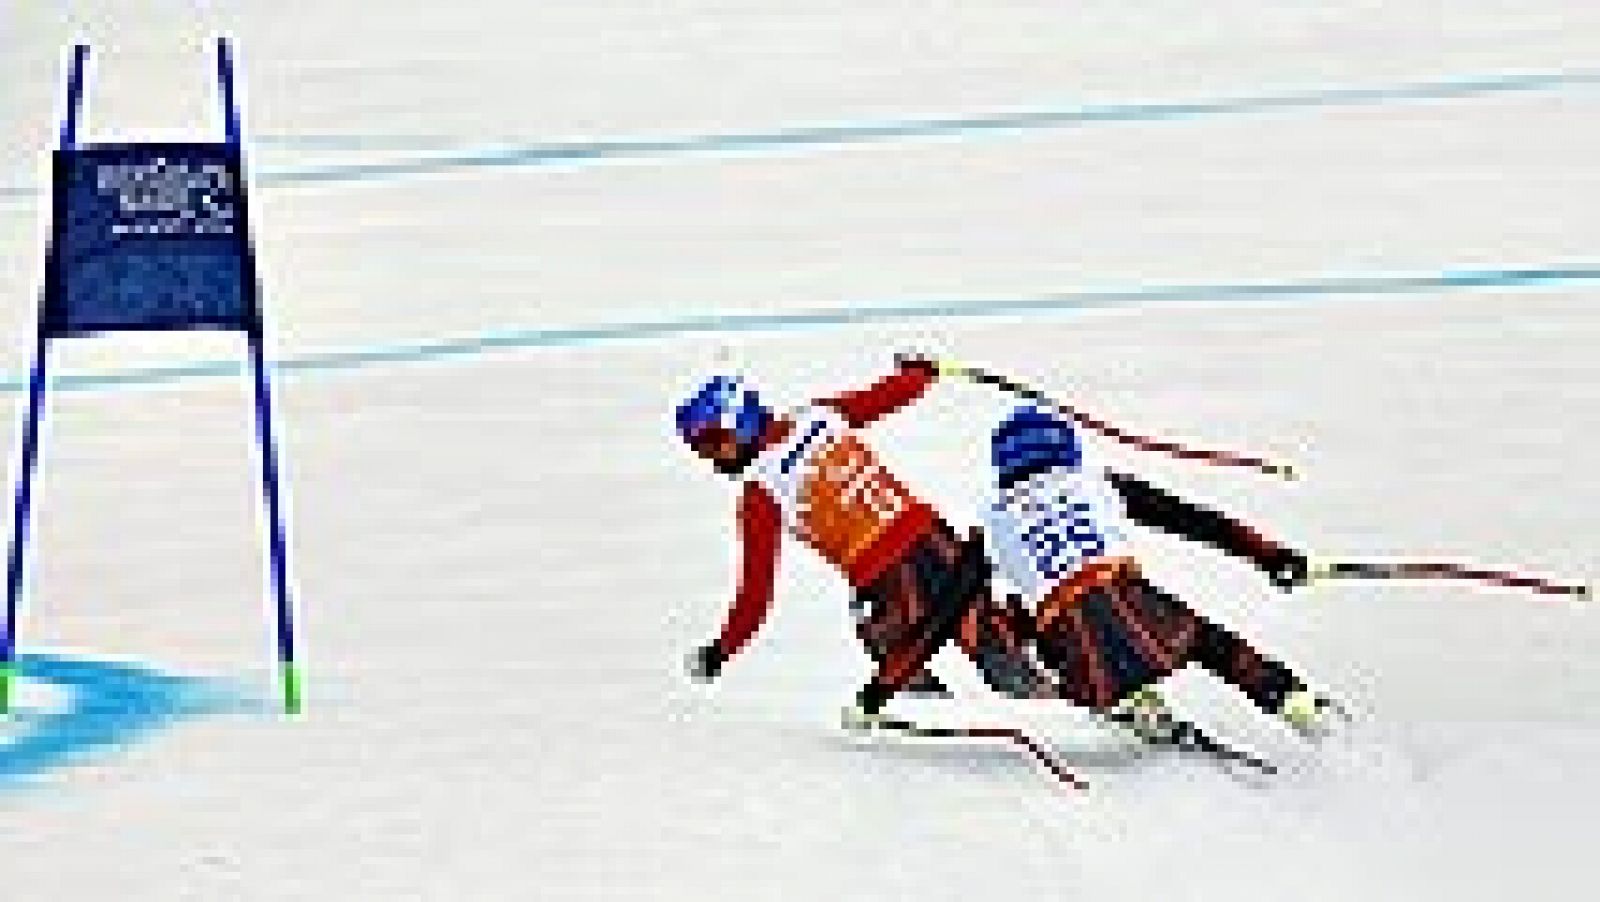 La sexta jornada de los Juegos Paralímpicos de invierno de Sochi solo puso en juego nueve medallas, las de eslalon en esquí alpino masculino, y una de ellas fue a parar al cuello de Jon Santacana y Miguel Galindo, quienes consiguieron la segunda pres